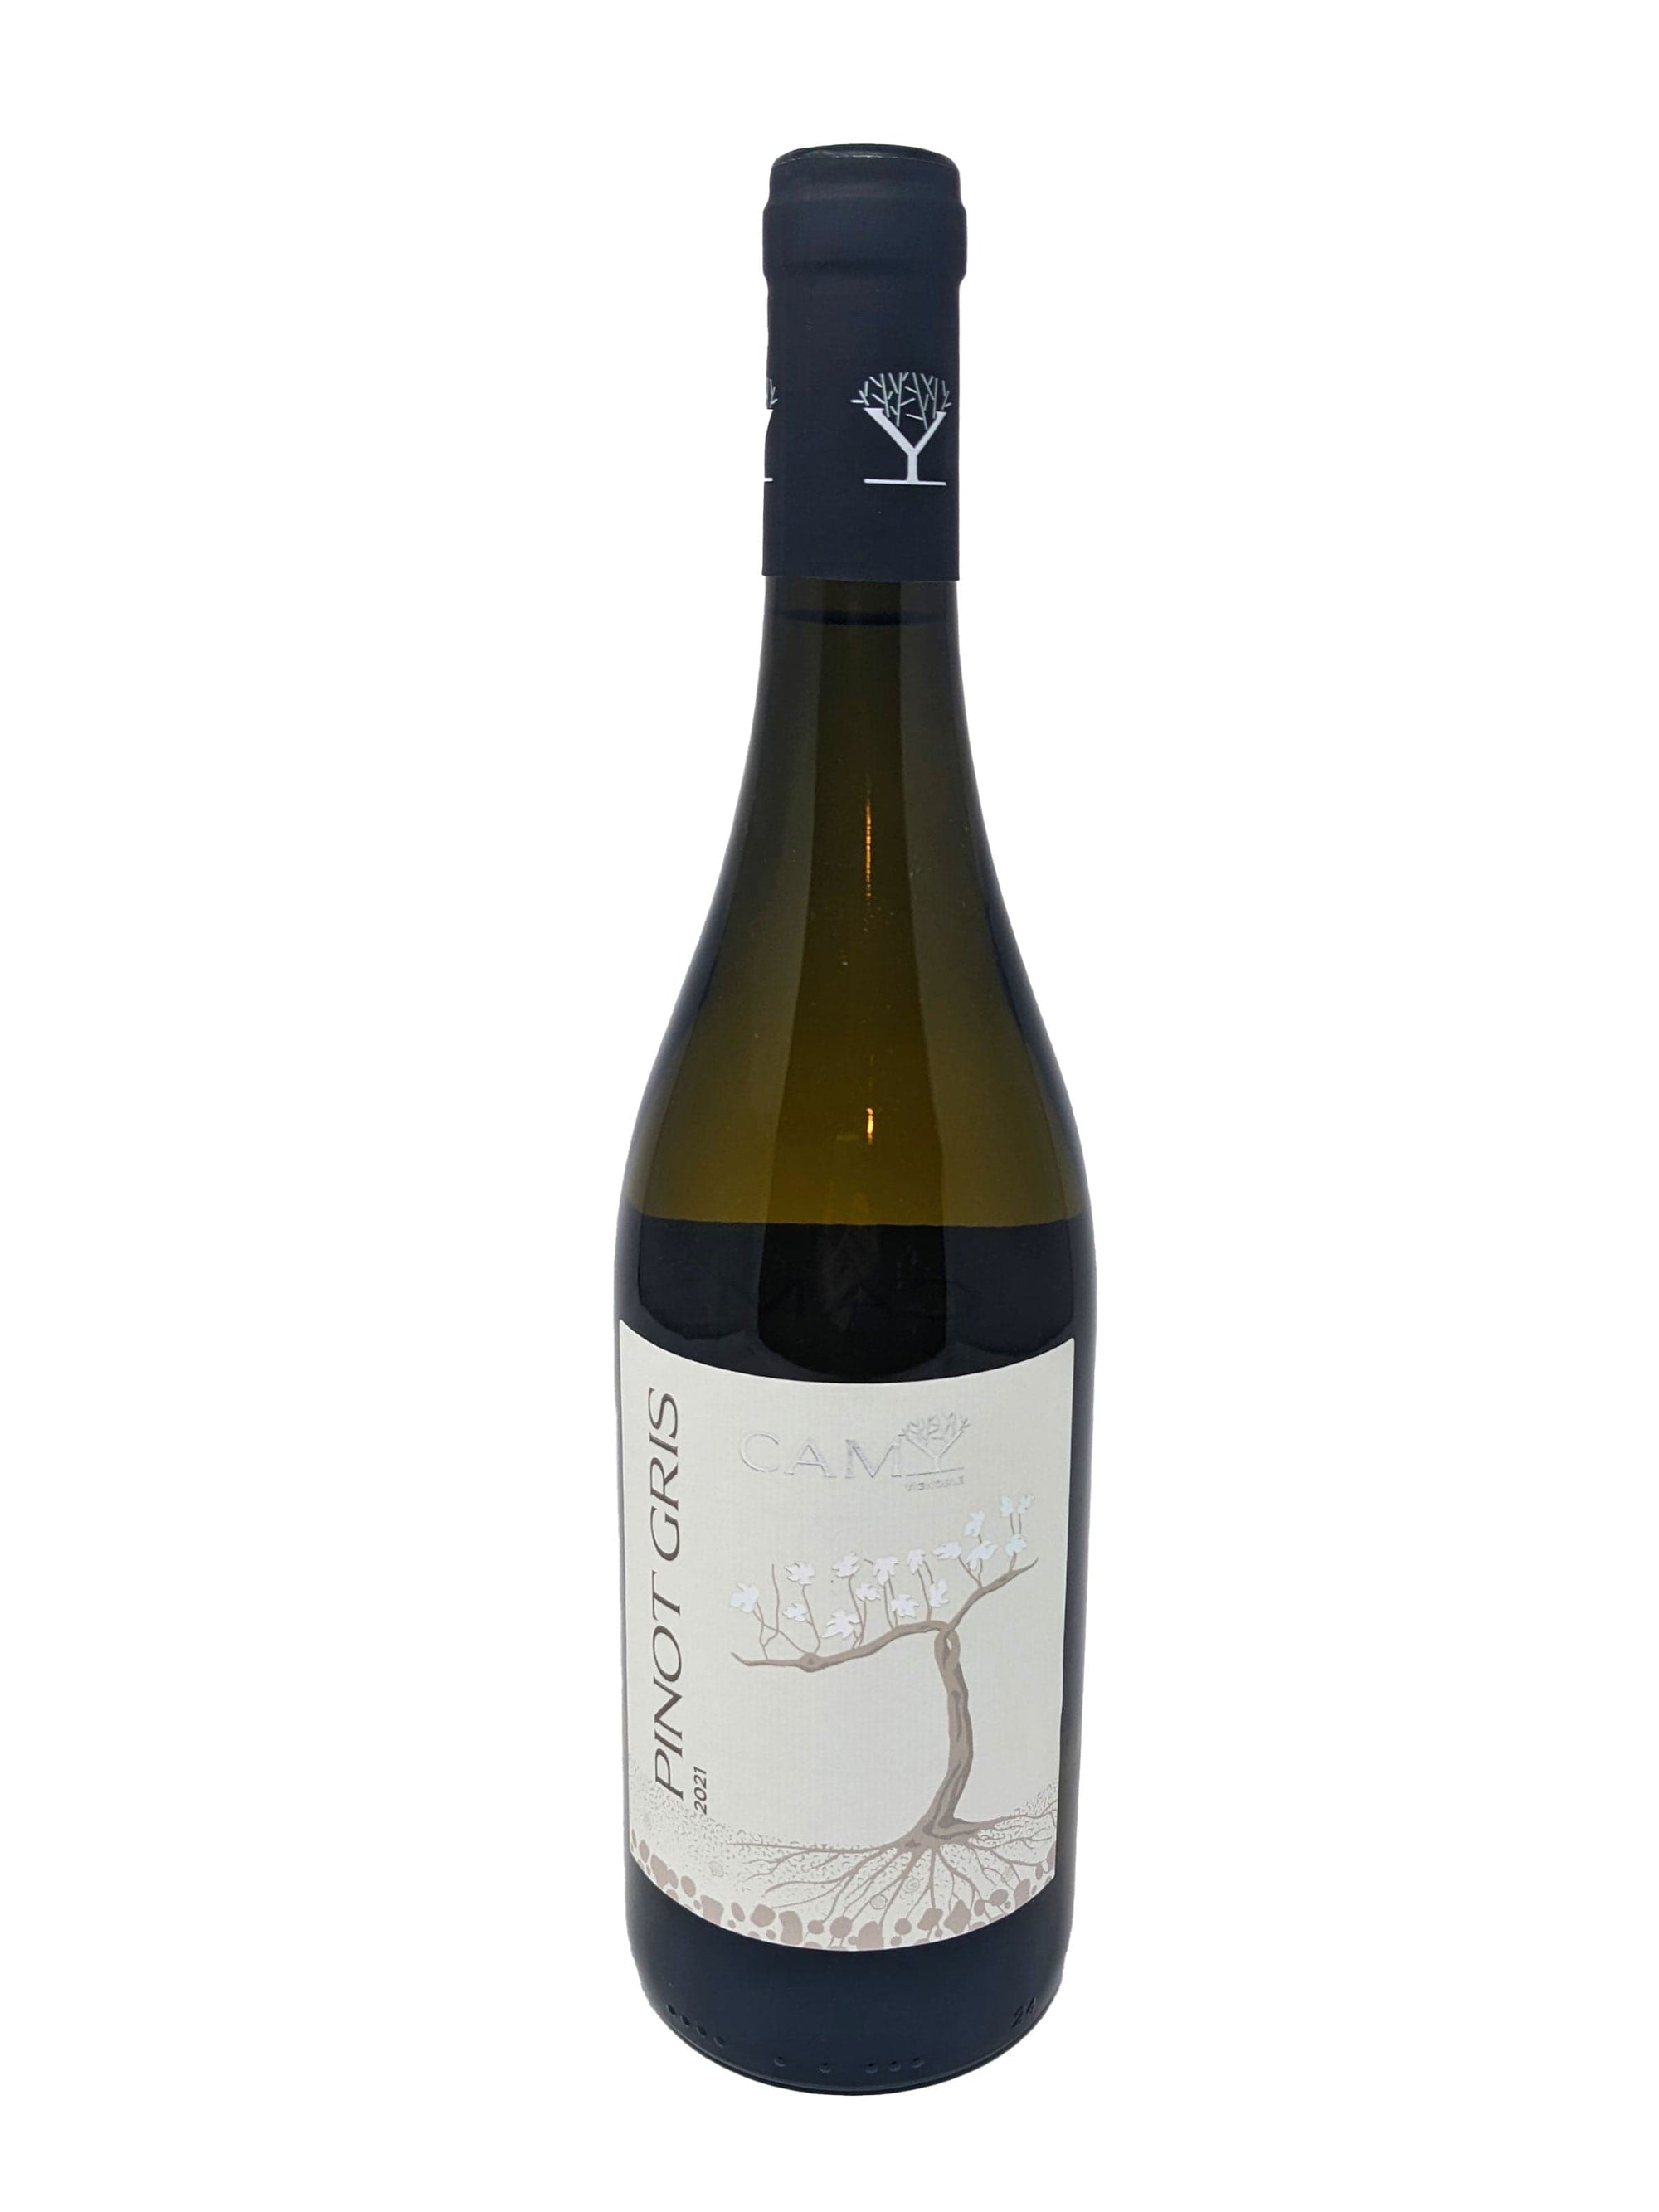 Vignoble Camy Pinot Gris 2021 - Vin blanc du vignoble Camy